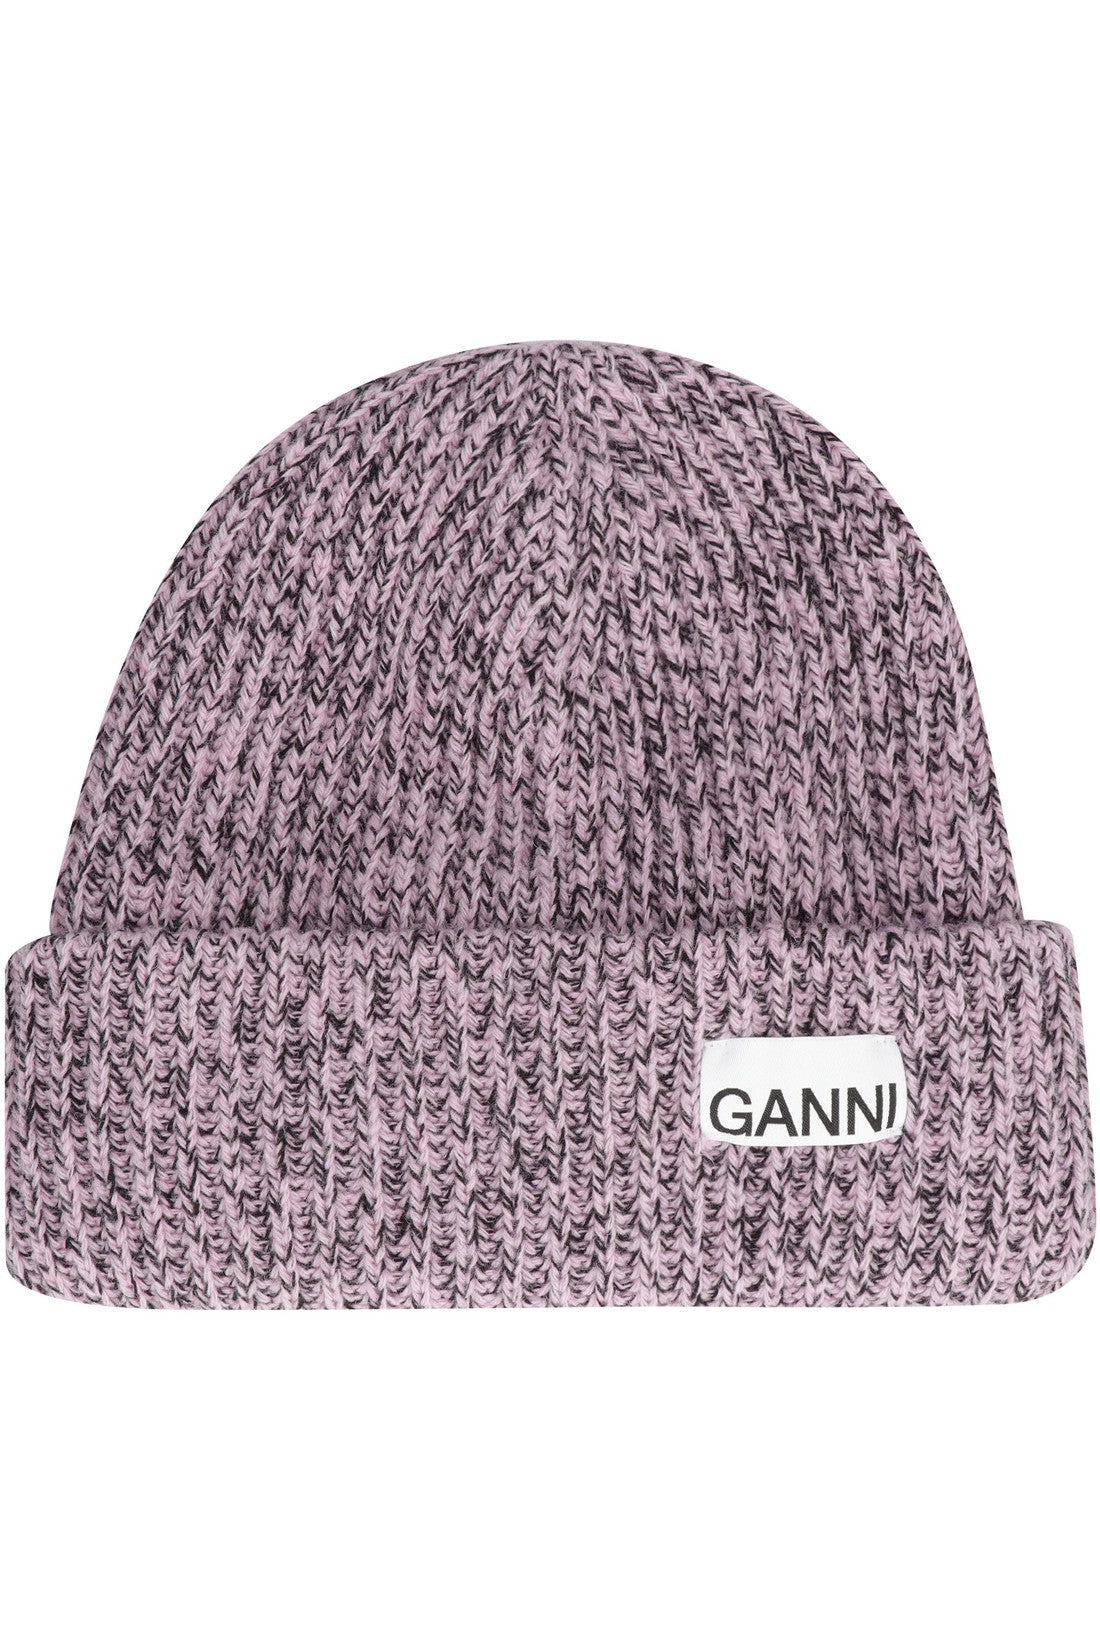 GANNI-OUTLET-SALE-Wool hat-ARCHIVIST